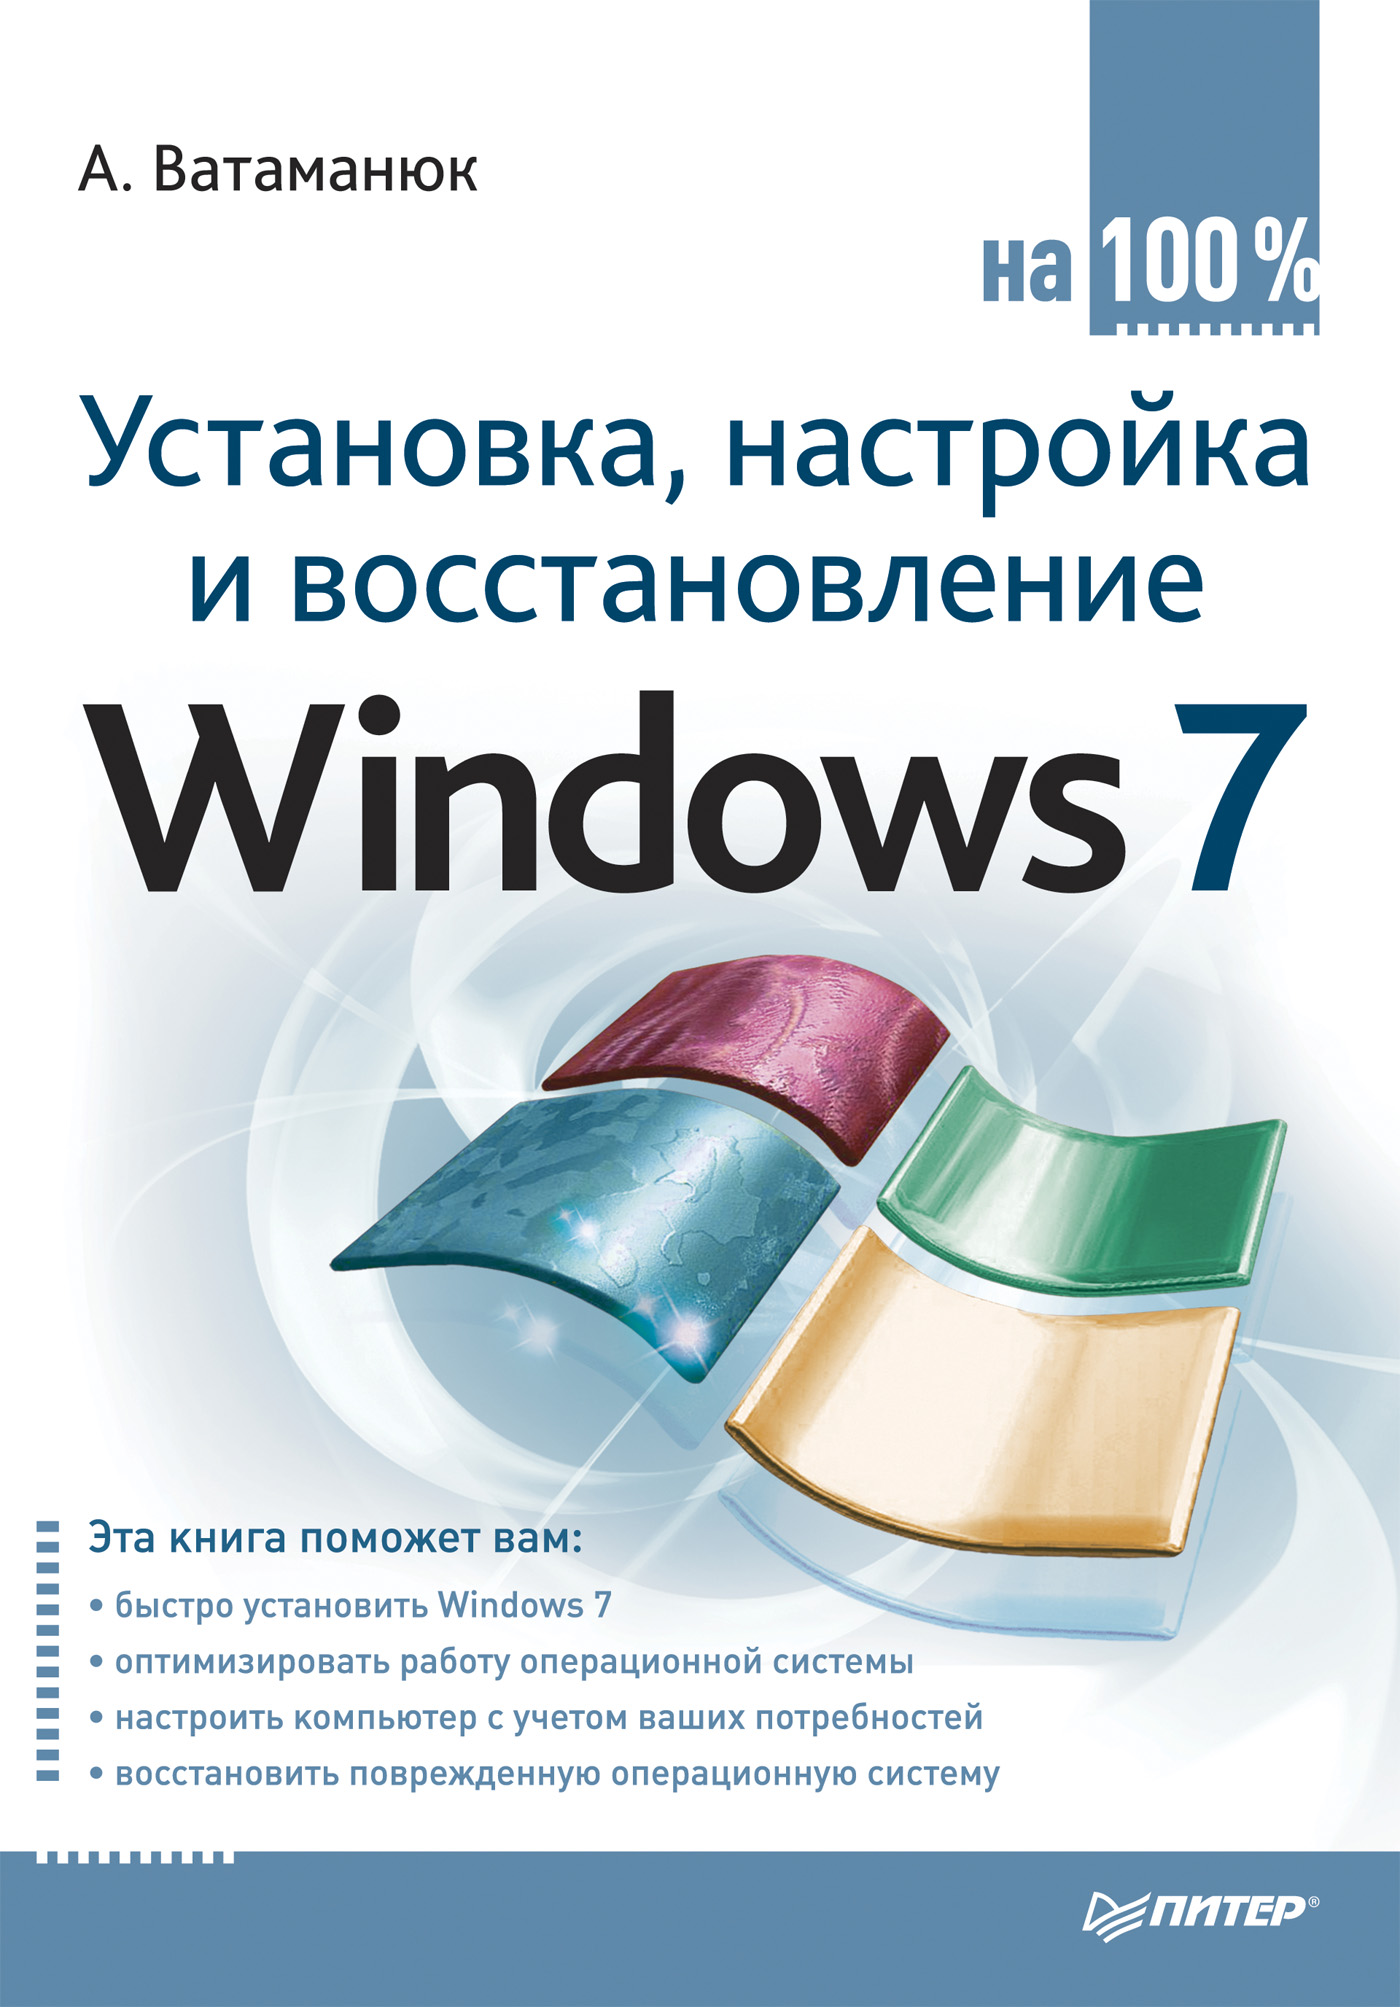 Книга  Установка, настройка и восстановление Windows 7 на 100% созданная Александр Ватаманюк может относится к жанру ОС и сети. Стоимость электронной книги Установка, настройка и восстановление Windows 7 на 100% с идентификатором 430192 составляет 59.00 руб.